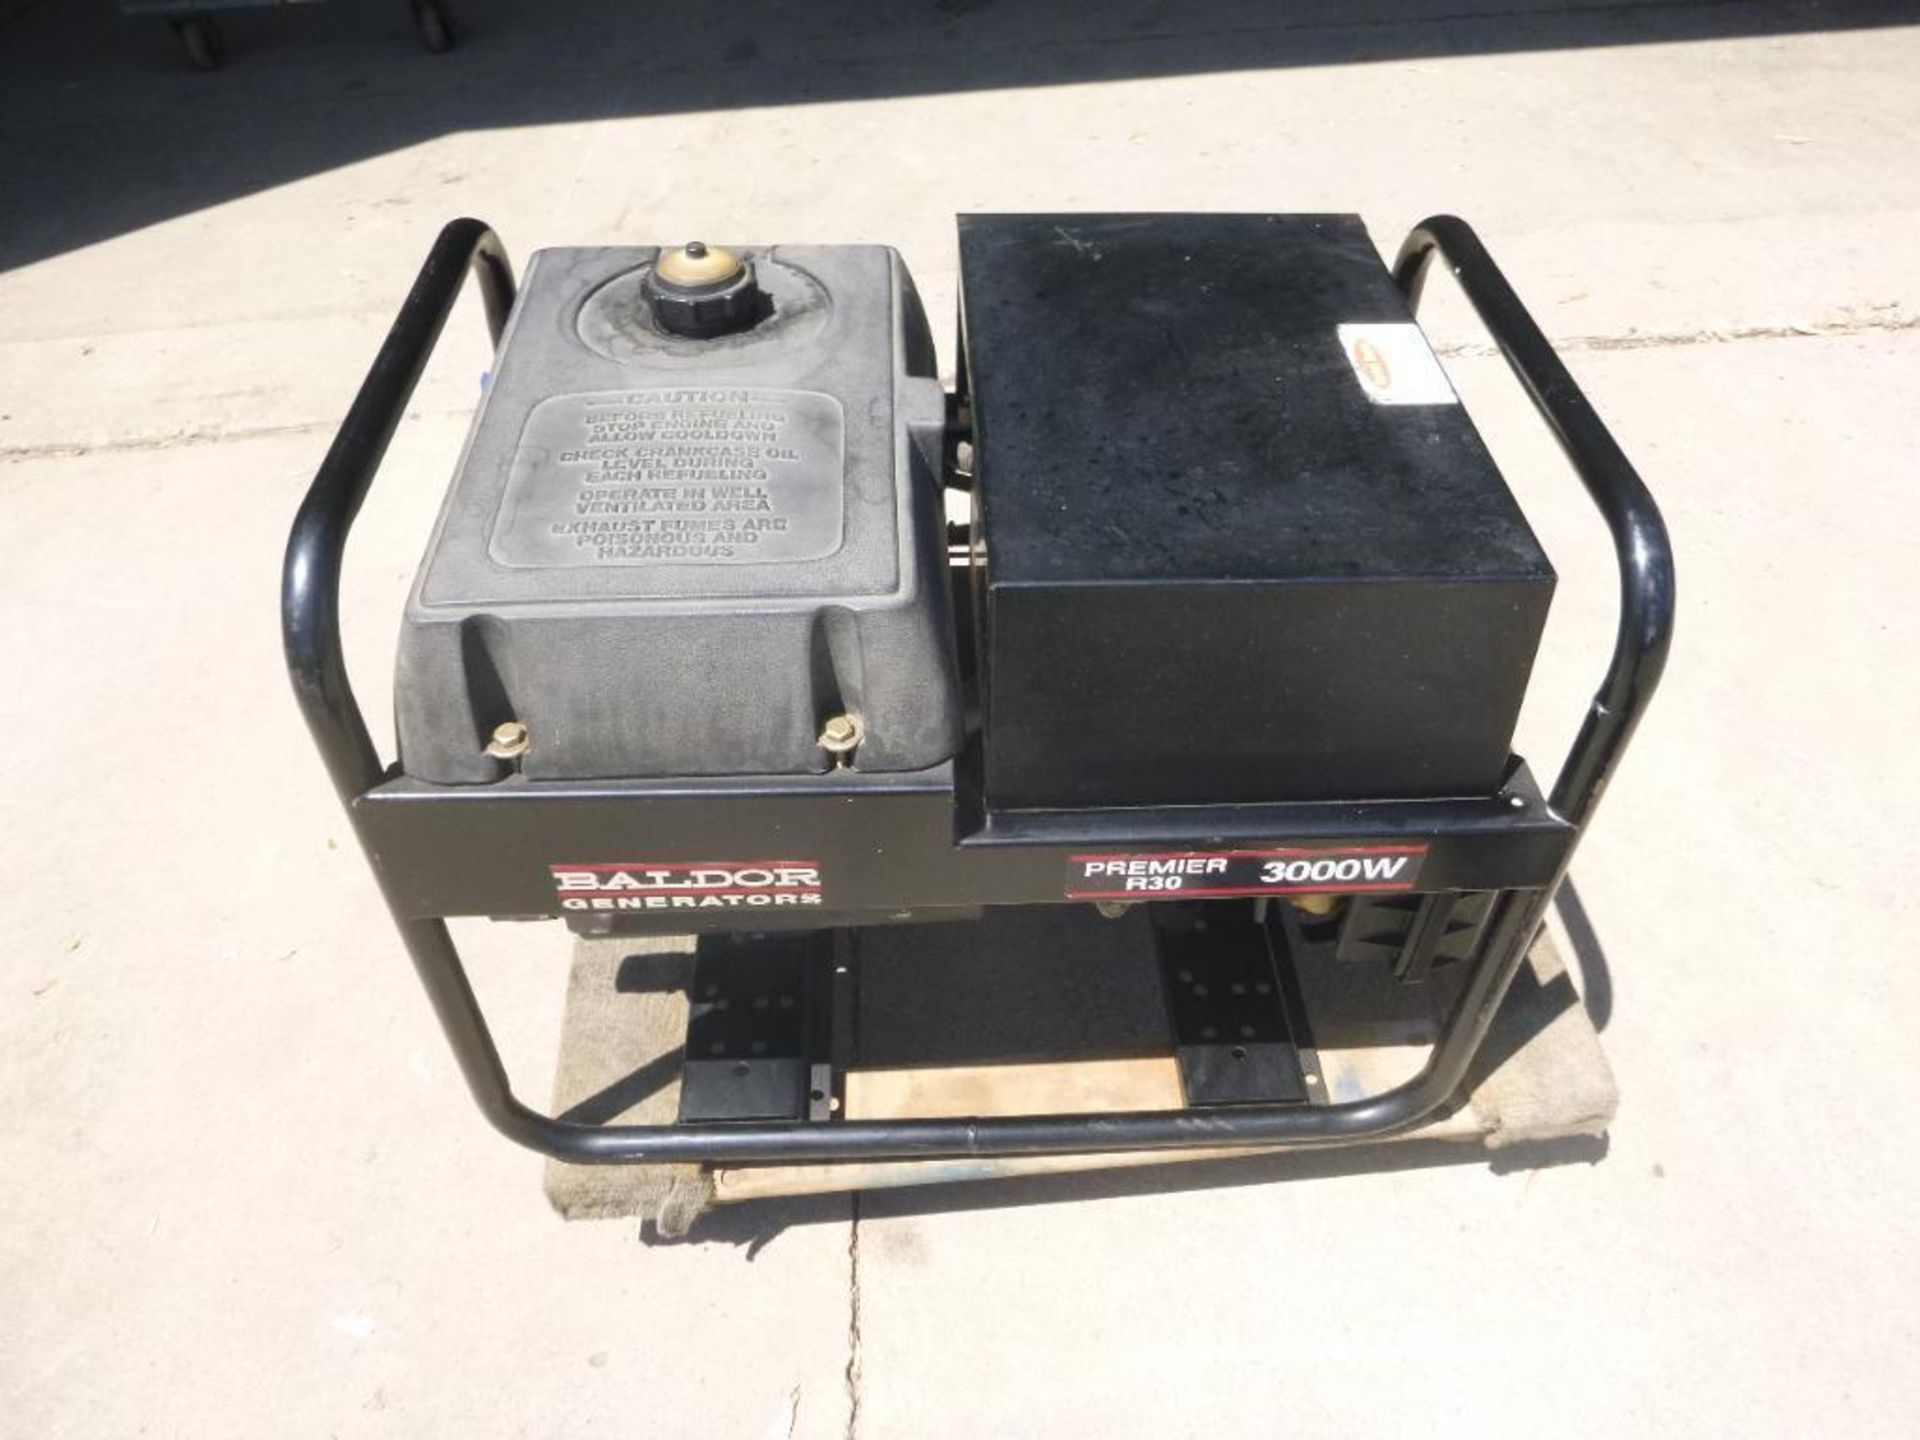 Baldor R30, Generator, 3000 Watt - Image 6 of 8